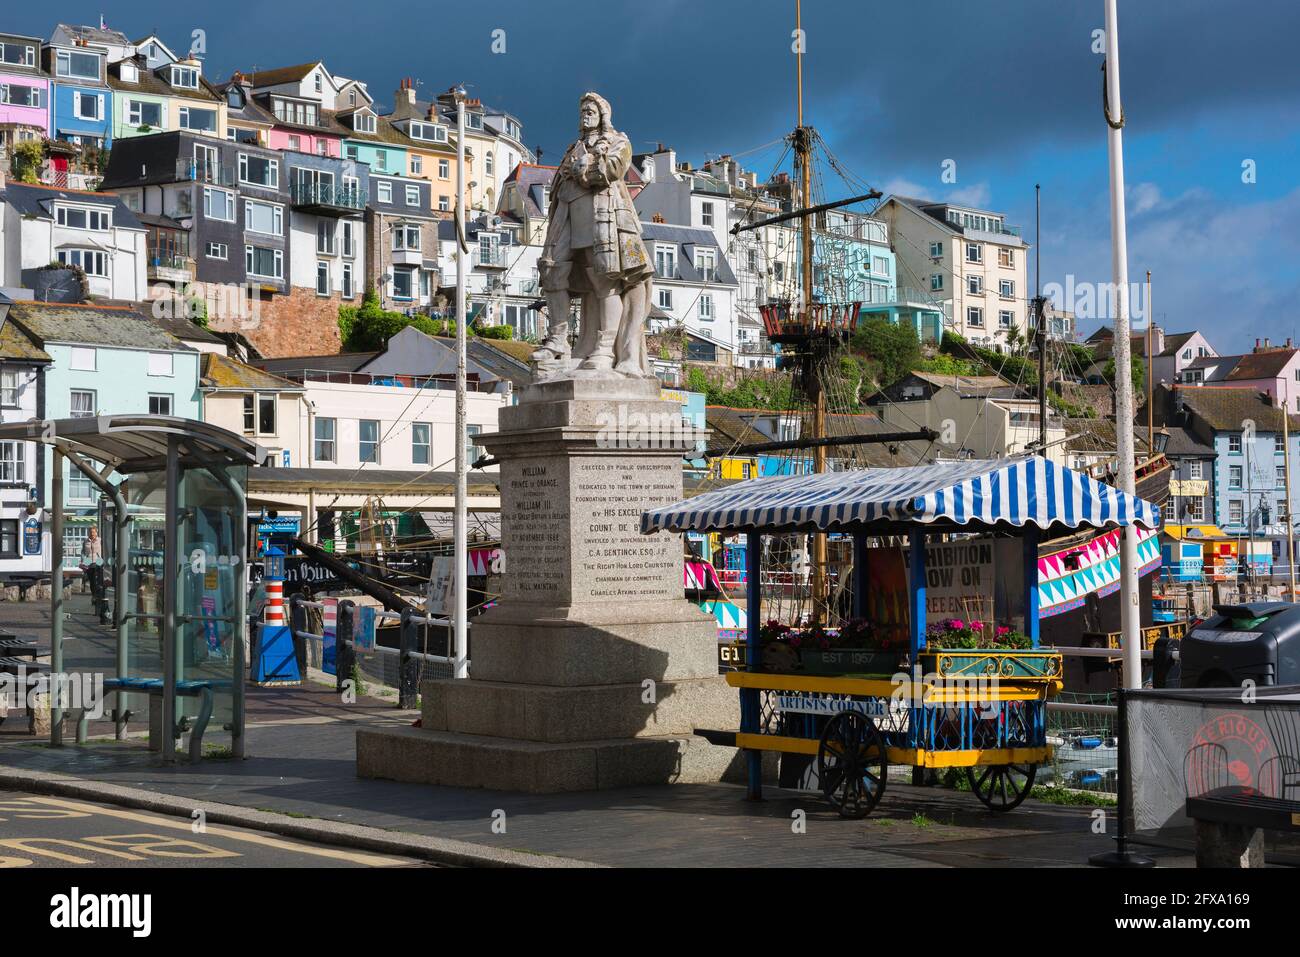 Devon GB ville, vue sur la statue du roi William lll situé sur le quai dans la ville côtière de pêche de Brixham, Devon Royaume-Uni Banque D'Images